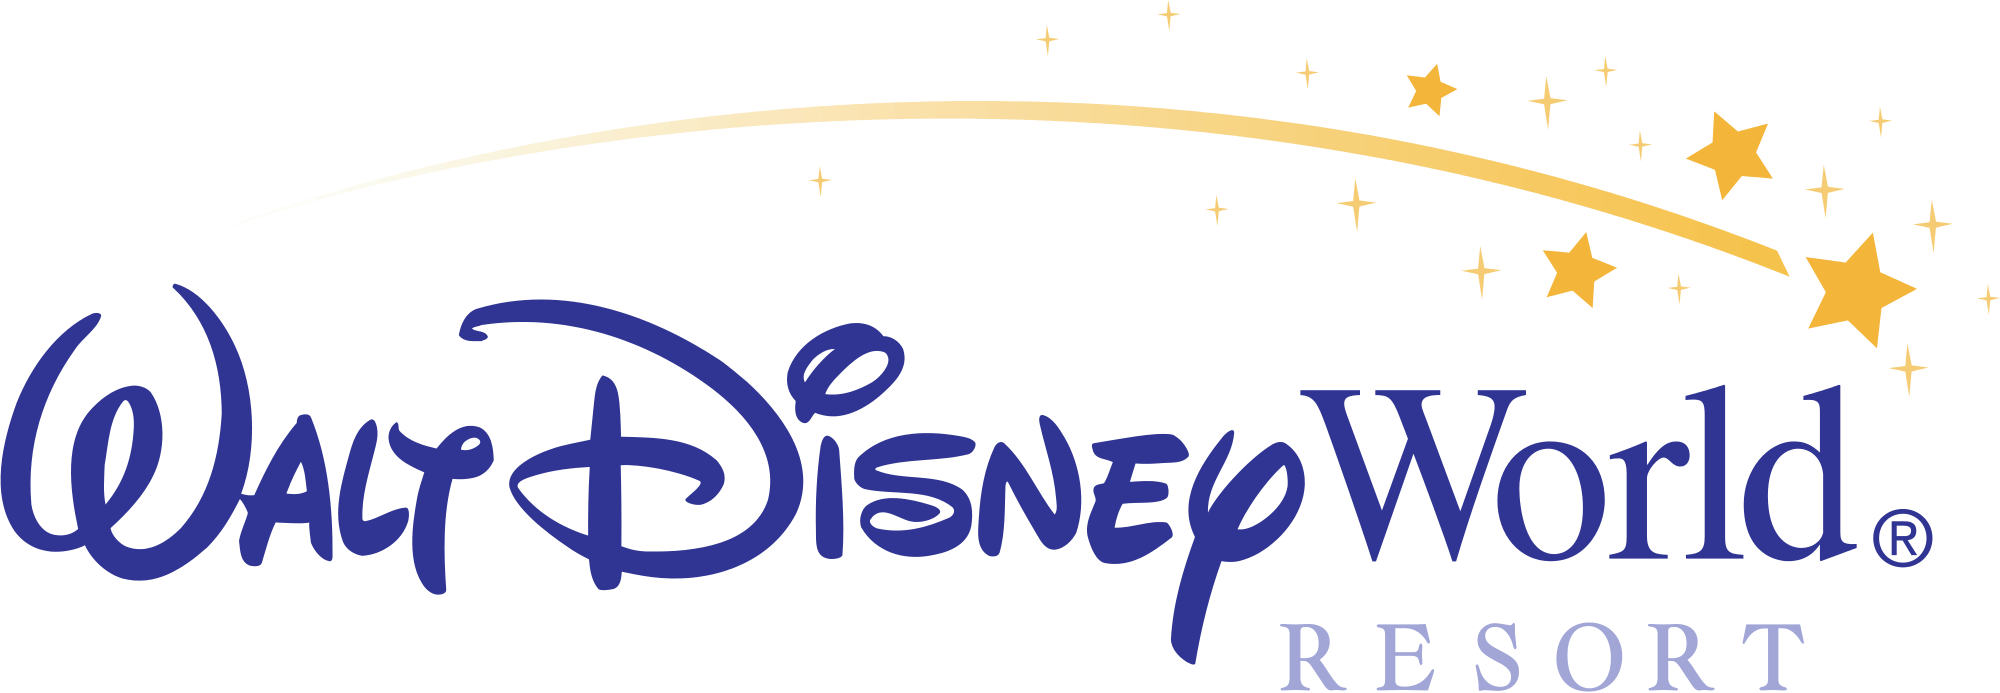 Walt Disney Resorts and Parks Logo - Walt Disney Parks and Resorts | Disney Wiki | FANDOM powered by Wikia